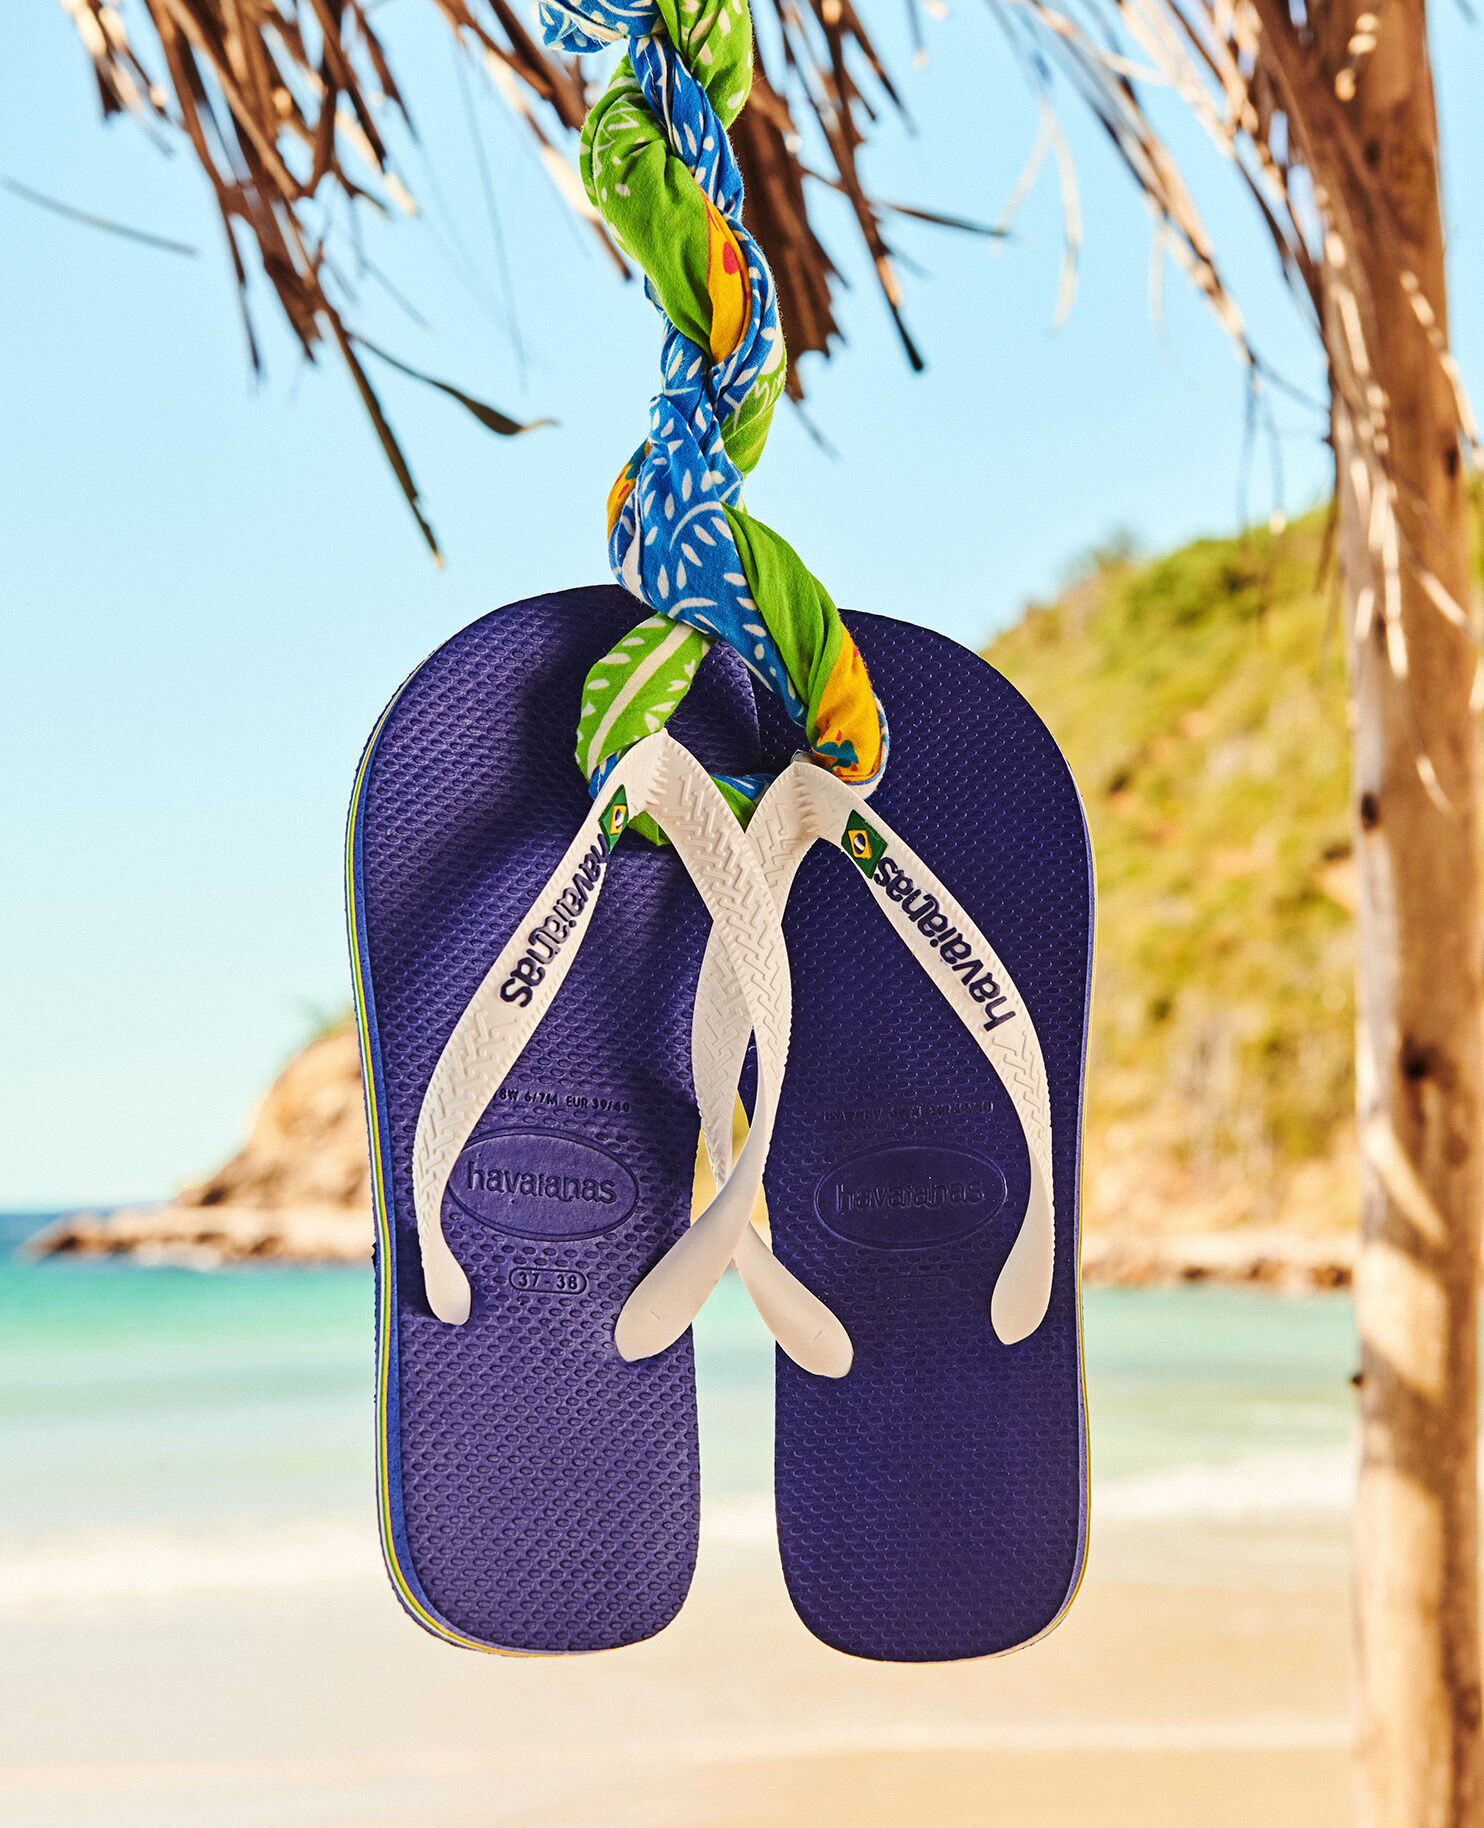 Havaianas Brazil Men's Flip Flop Sandals Solid Color Choose Size Rubber Non-Slip 